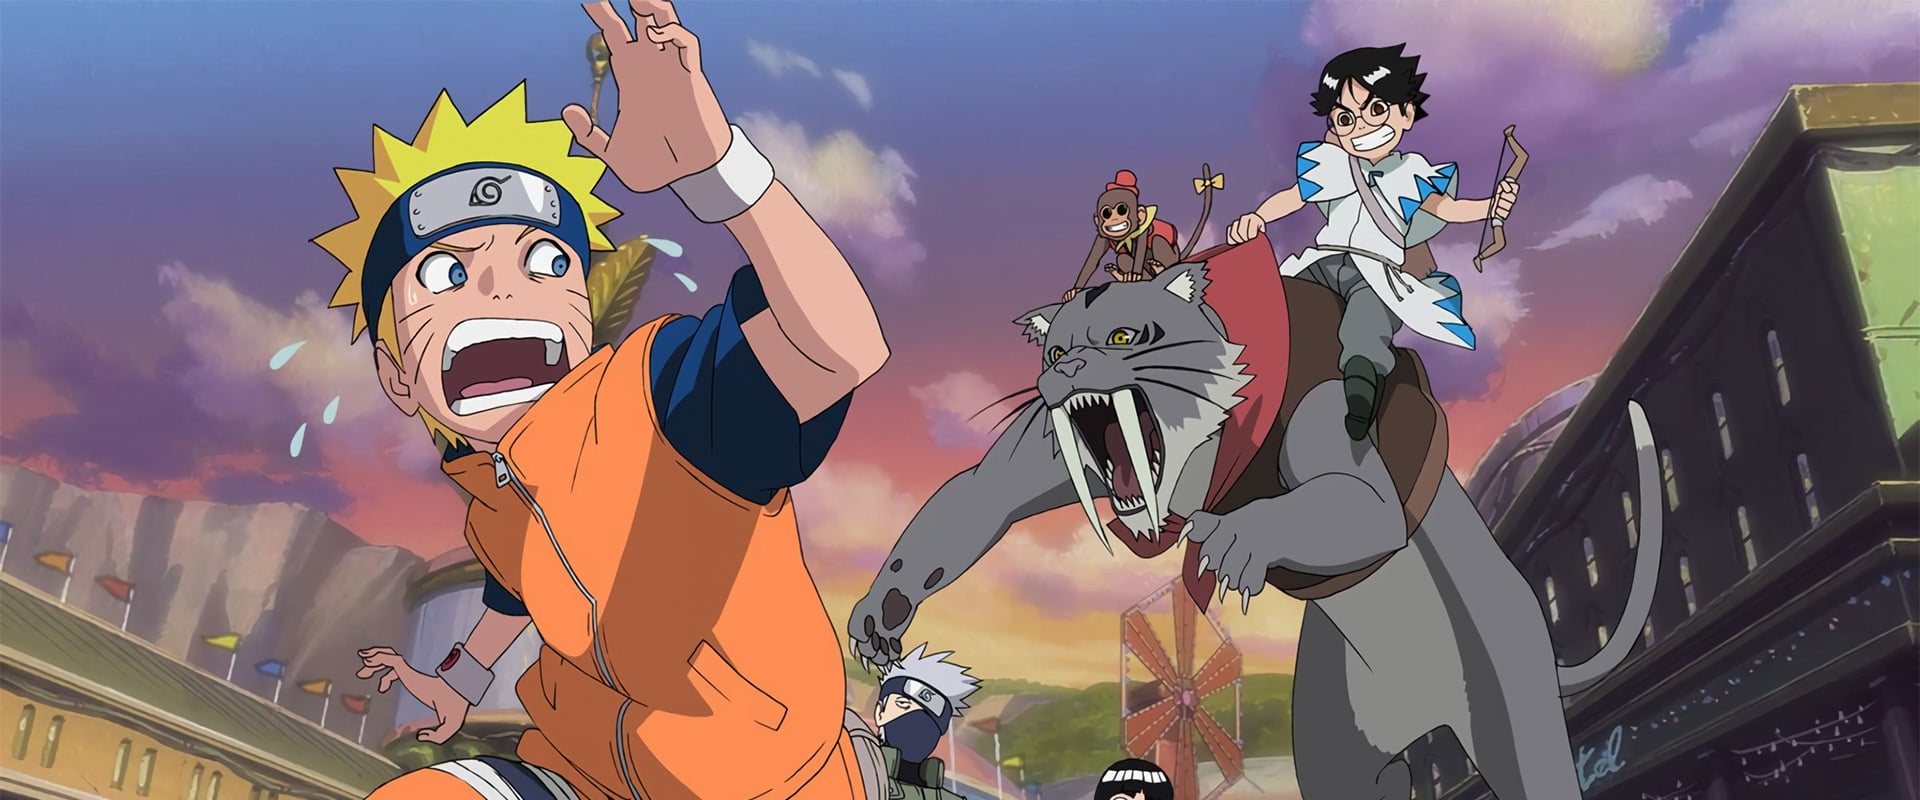 Naruto il film: I guardiani del Regno della Luna Crescente